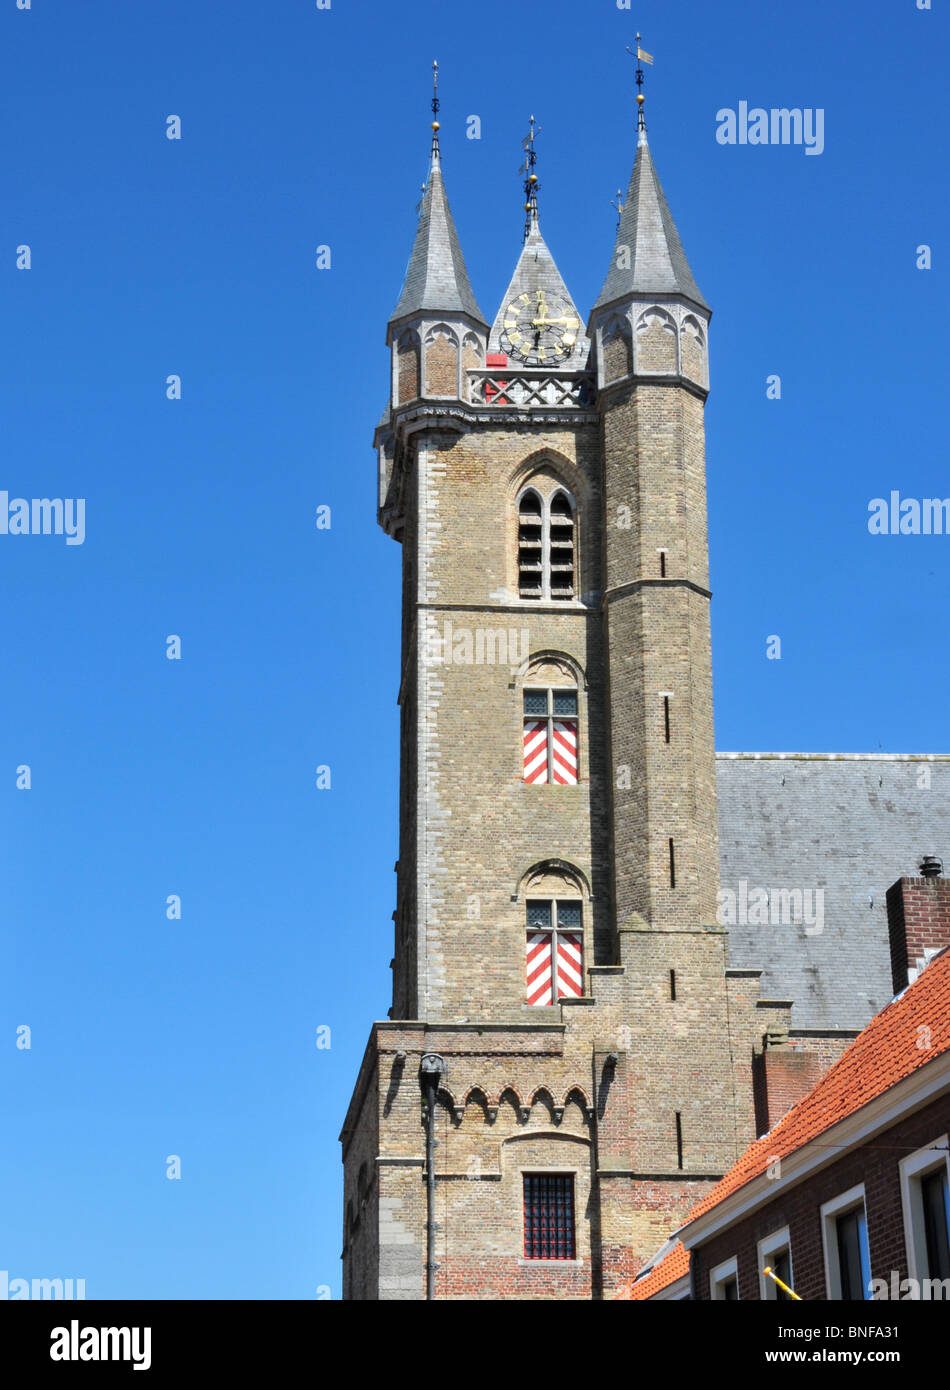 Das Belfort-Turm im Rathaus in Sluis, Holland. Dies ist der einzige Belfort-Turm in den Niederlanden. Stockfoto